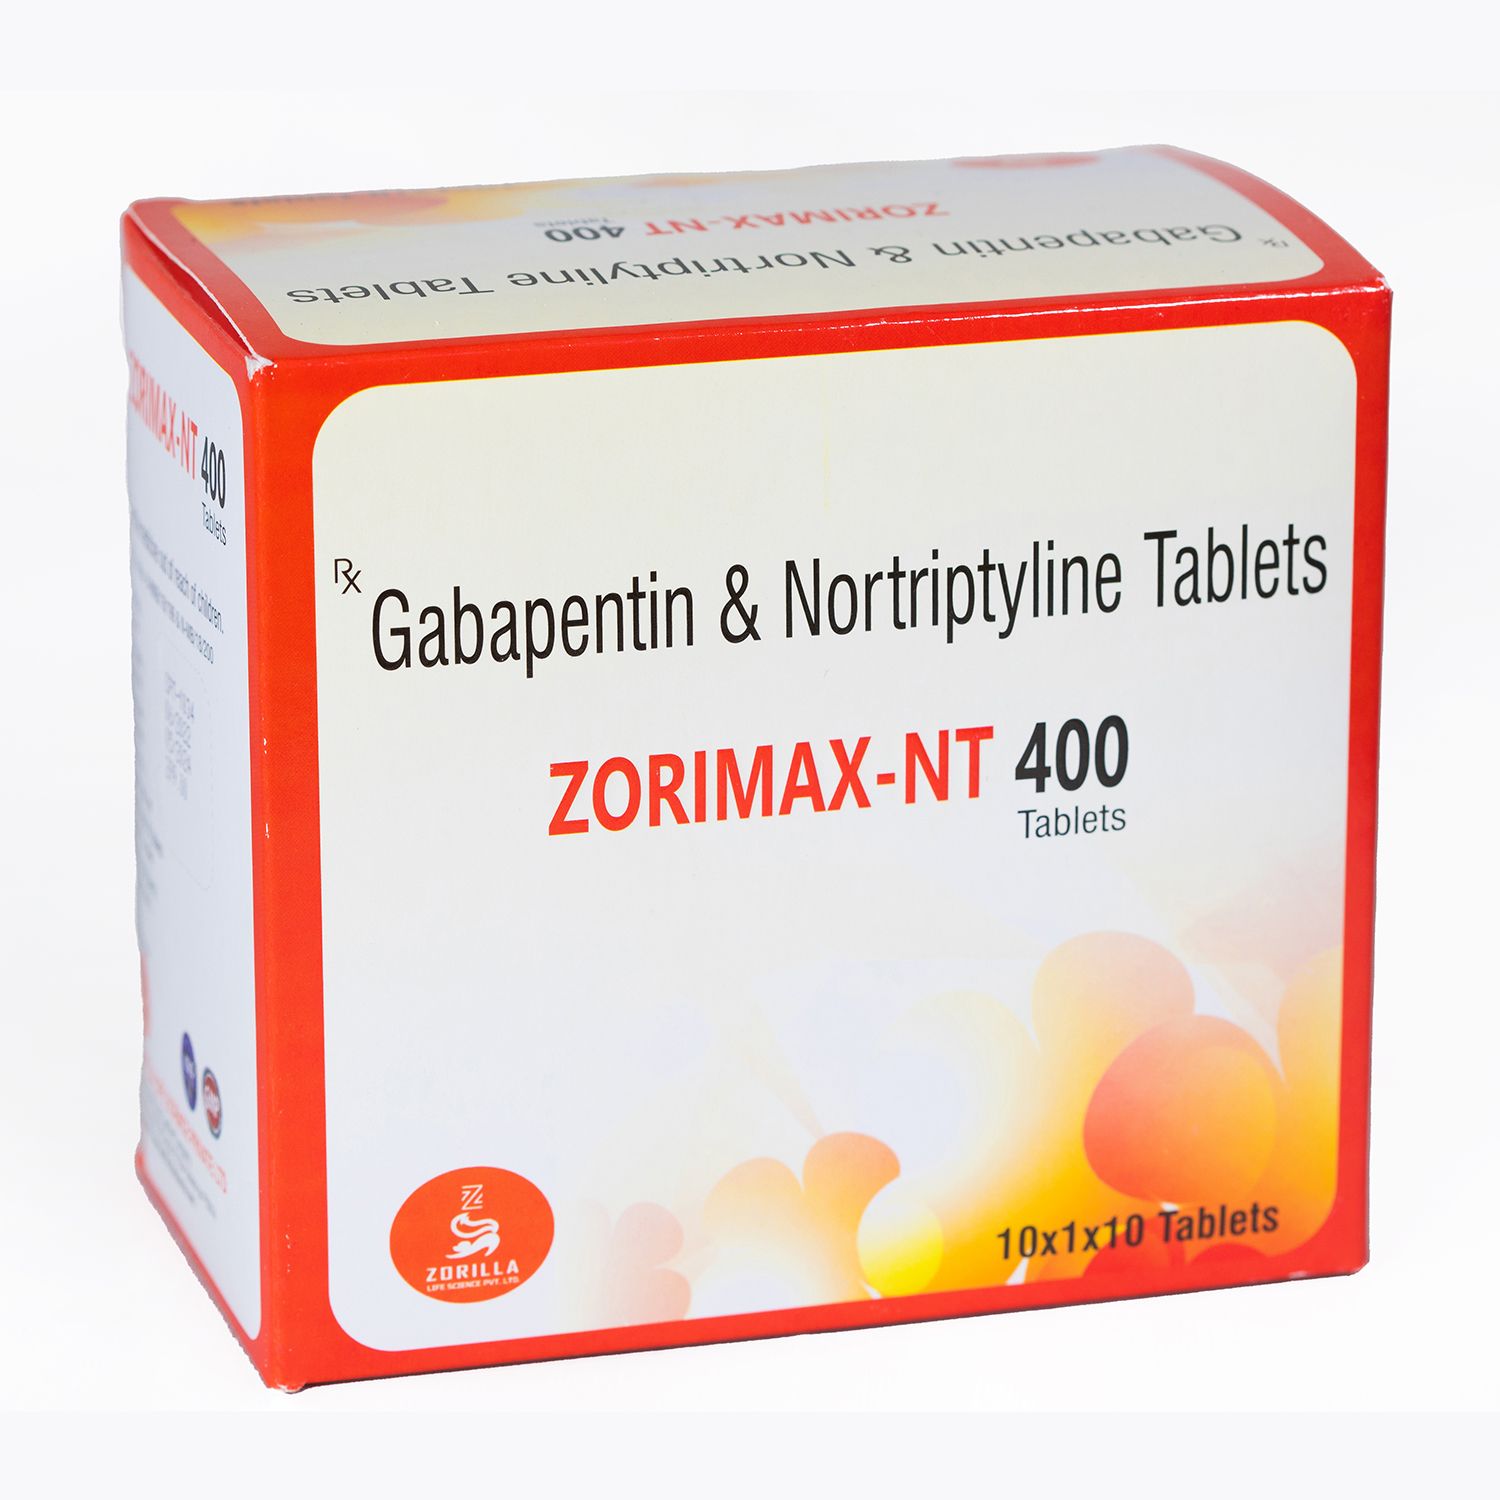 Zorimax NT 400 Gabapentin